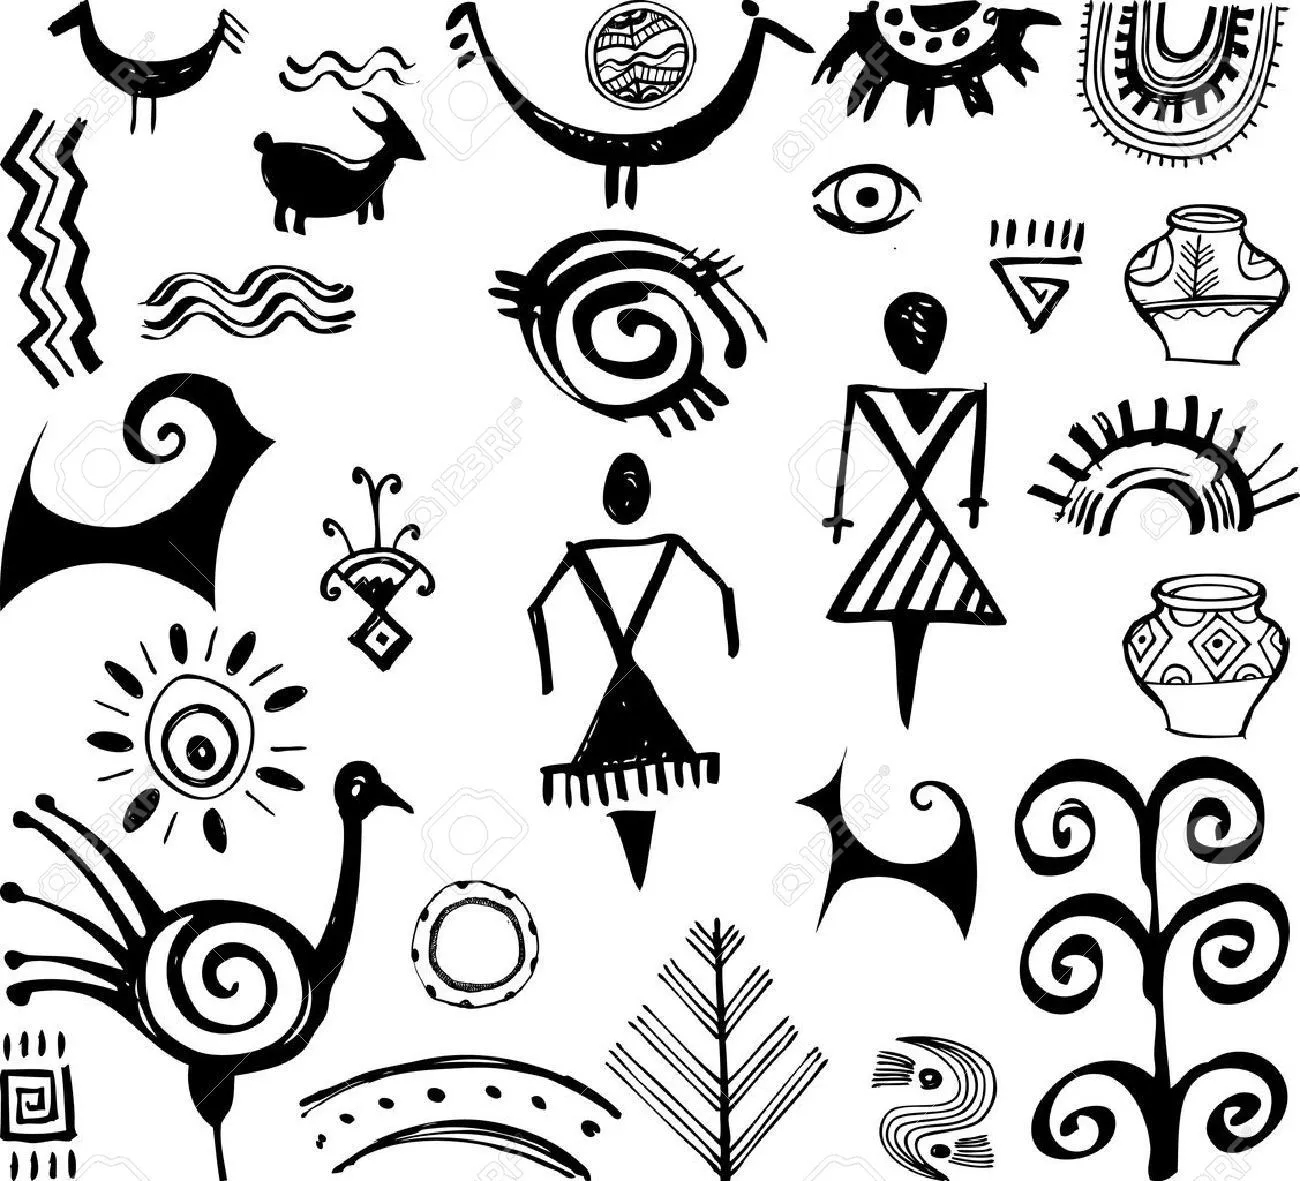 13 Guarda Pampa ideas | disenos de unas, dibujos rupestres, diseño  precolombino